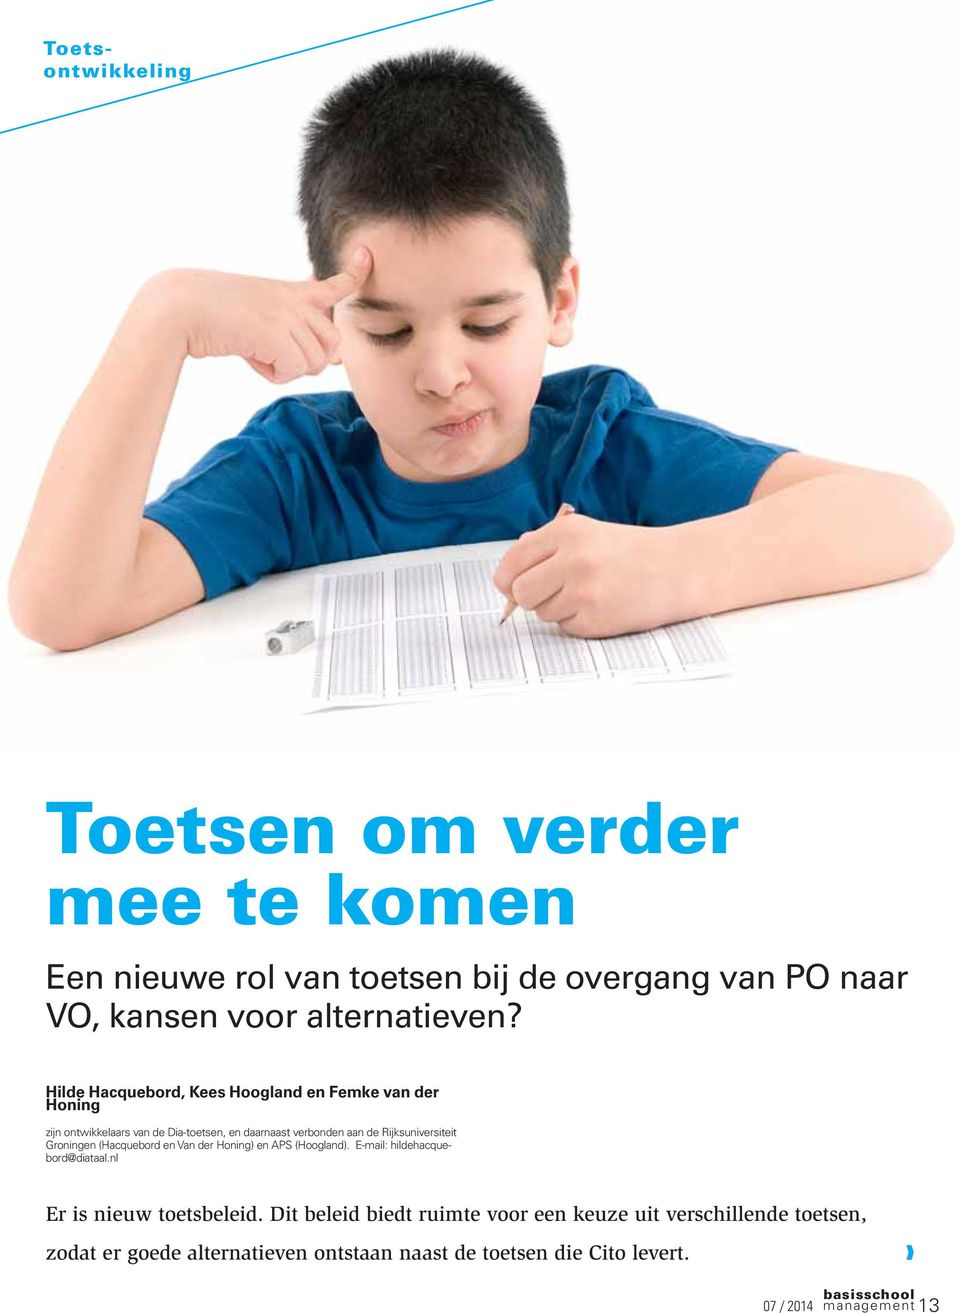 Rijksuniversiteit Groningen (Hacquebord en Van der Honing) en APS (Hoogland). E-mail: hildehacquebord@diataal.